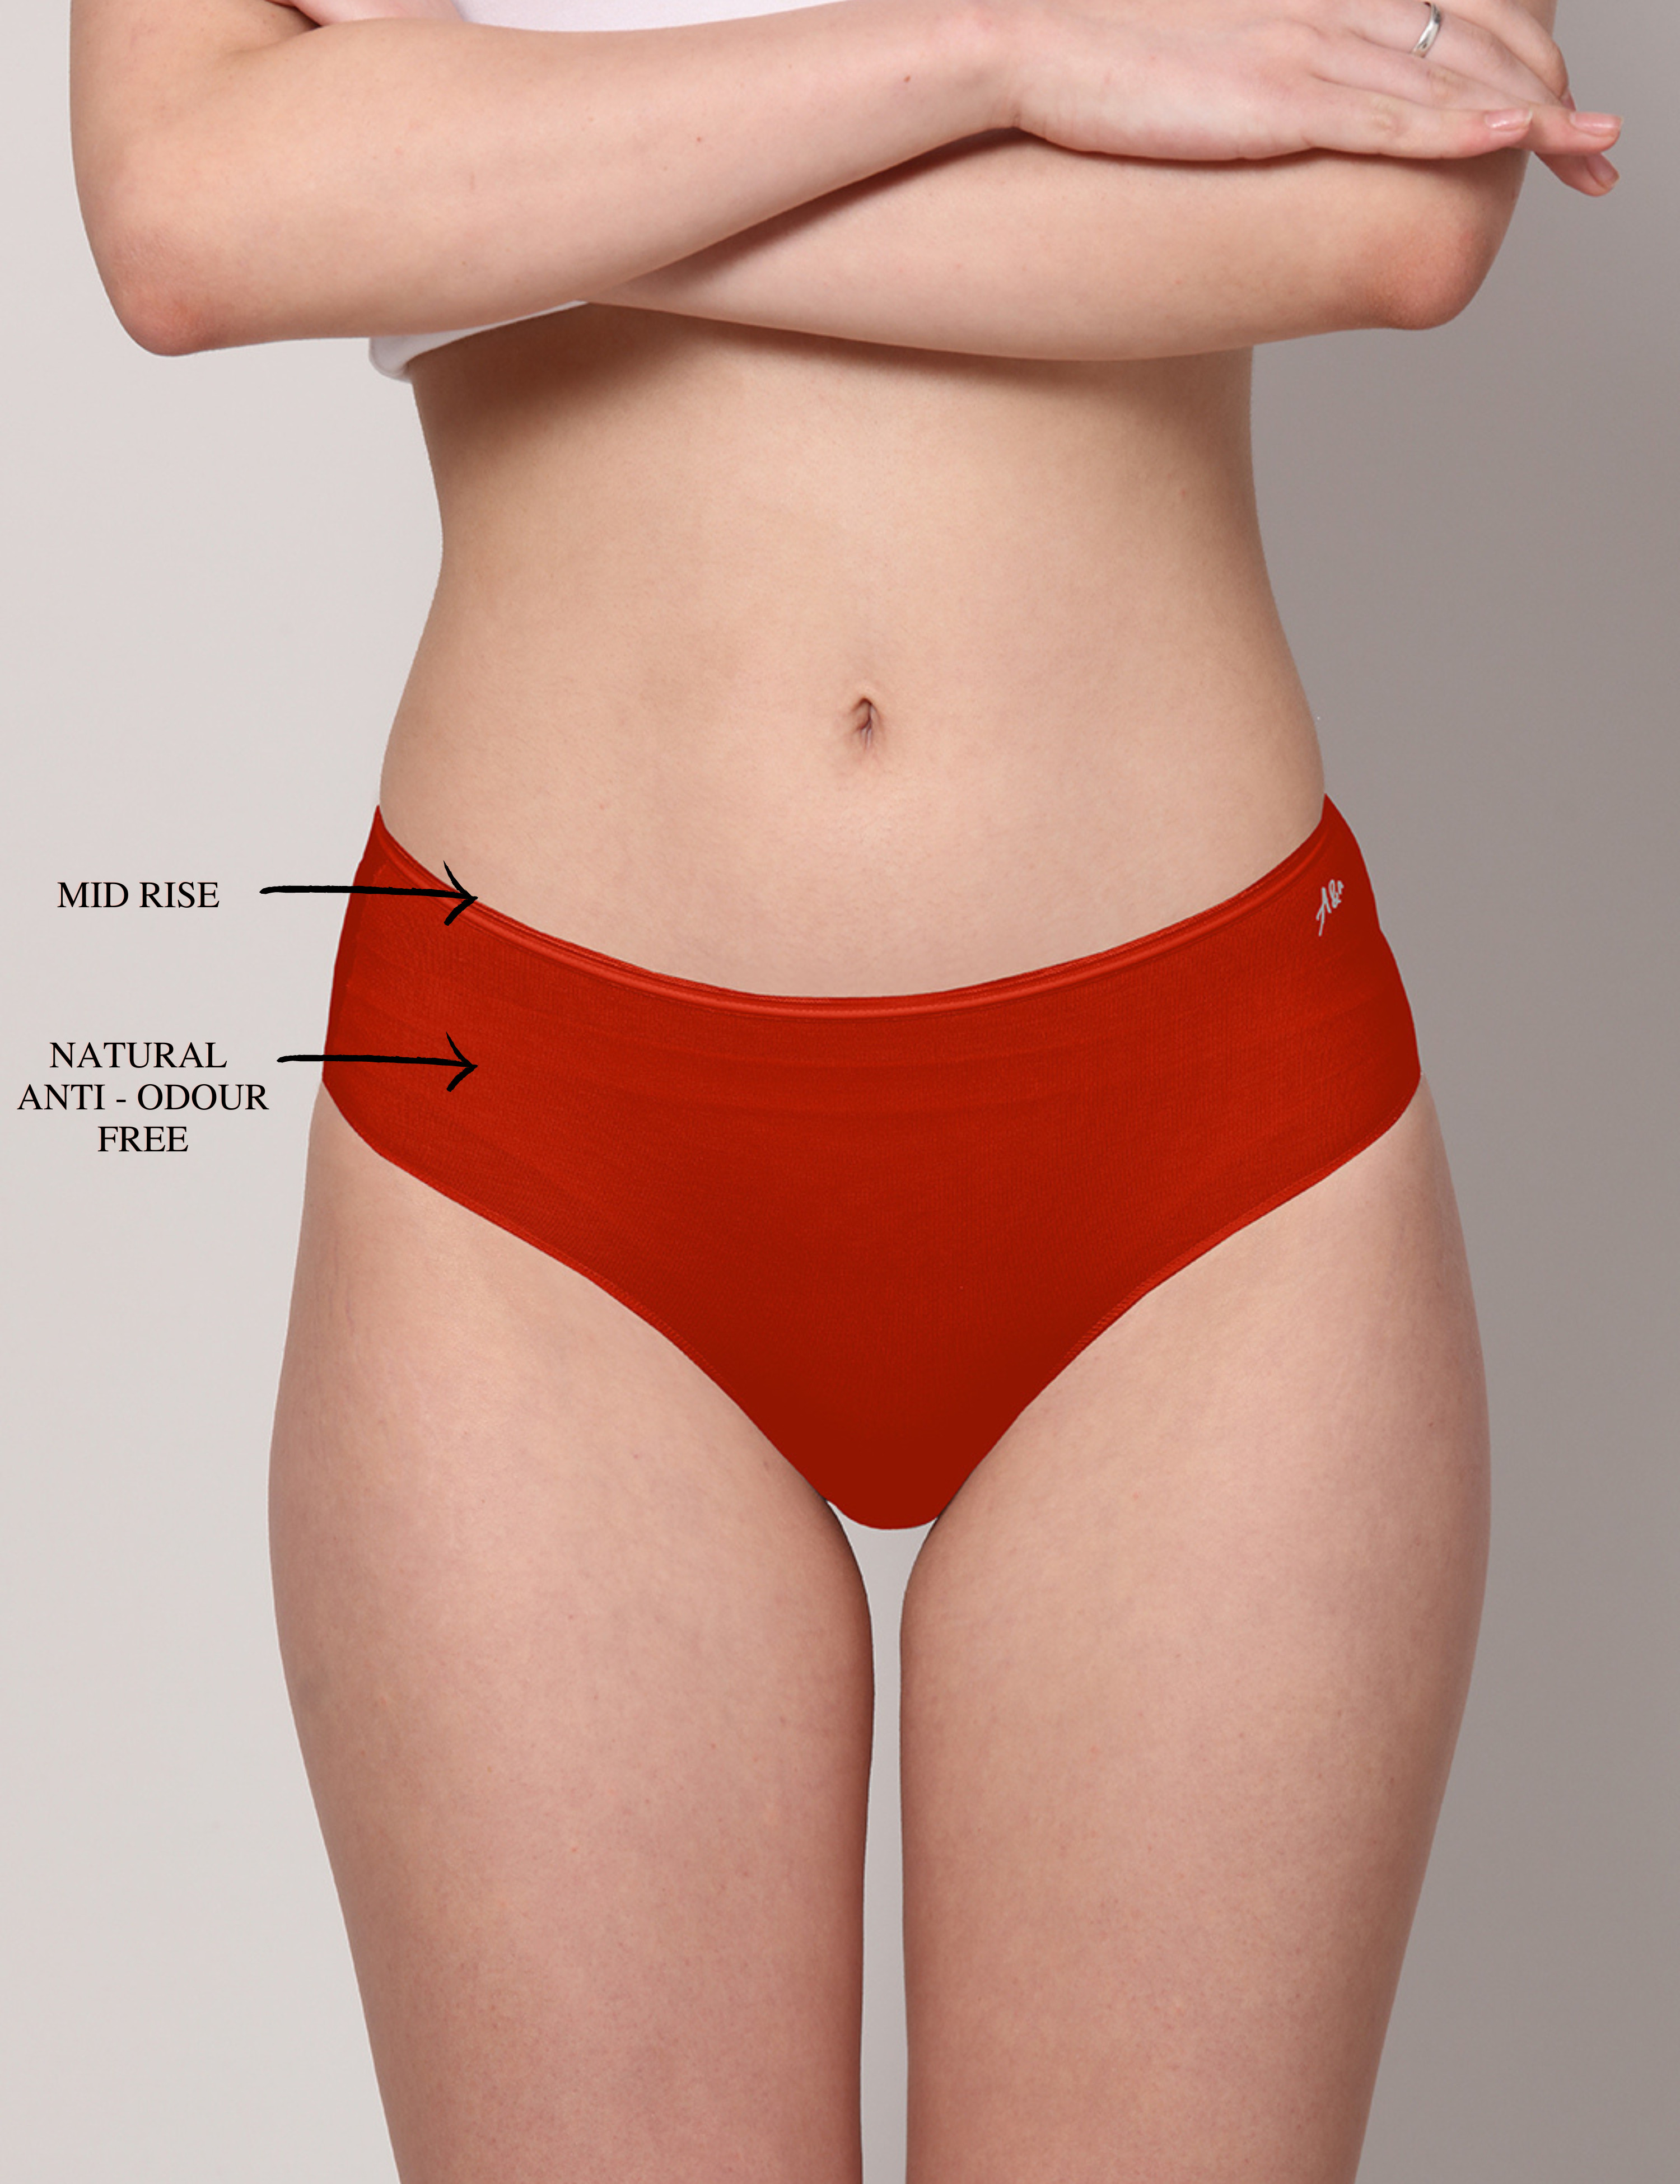 ATTITUDE Anti-Odor Seamless Women's Mid-Waist Underwear (Nude)